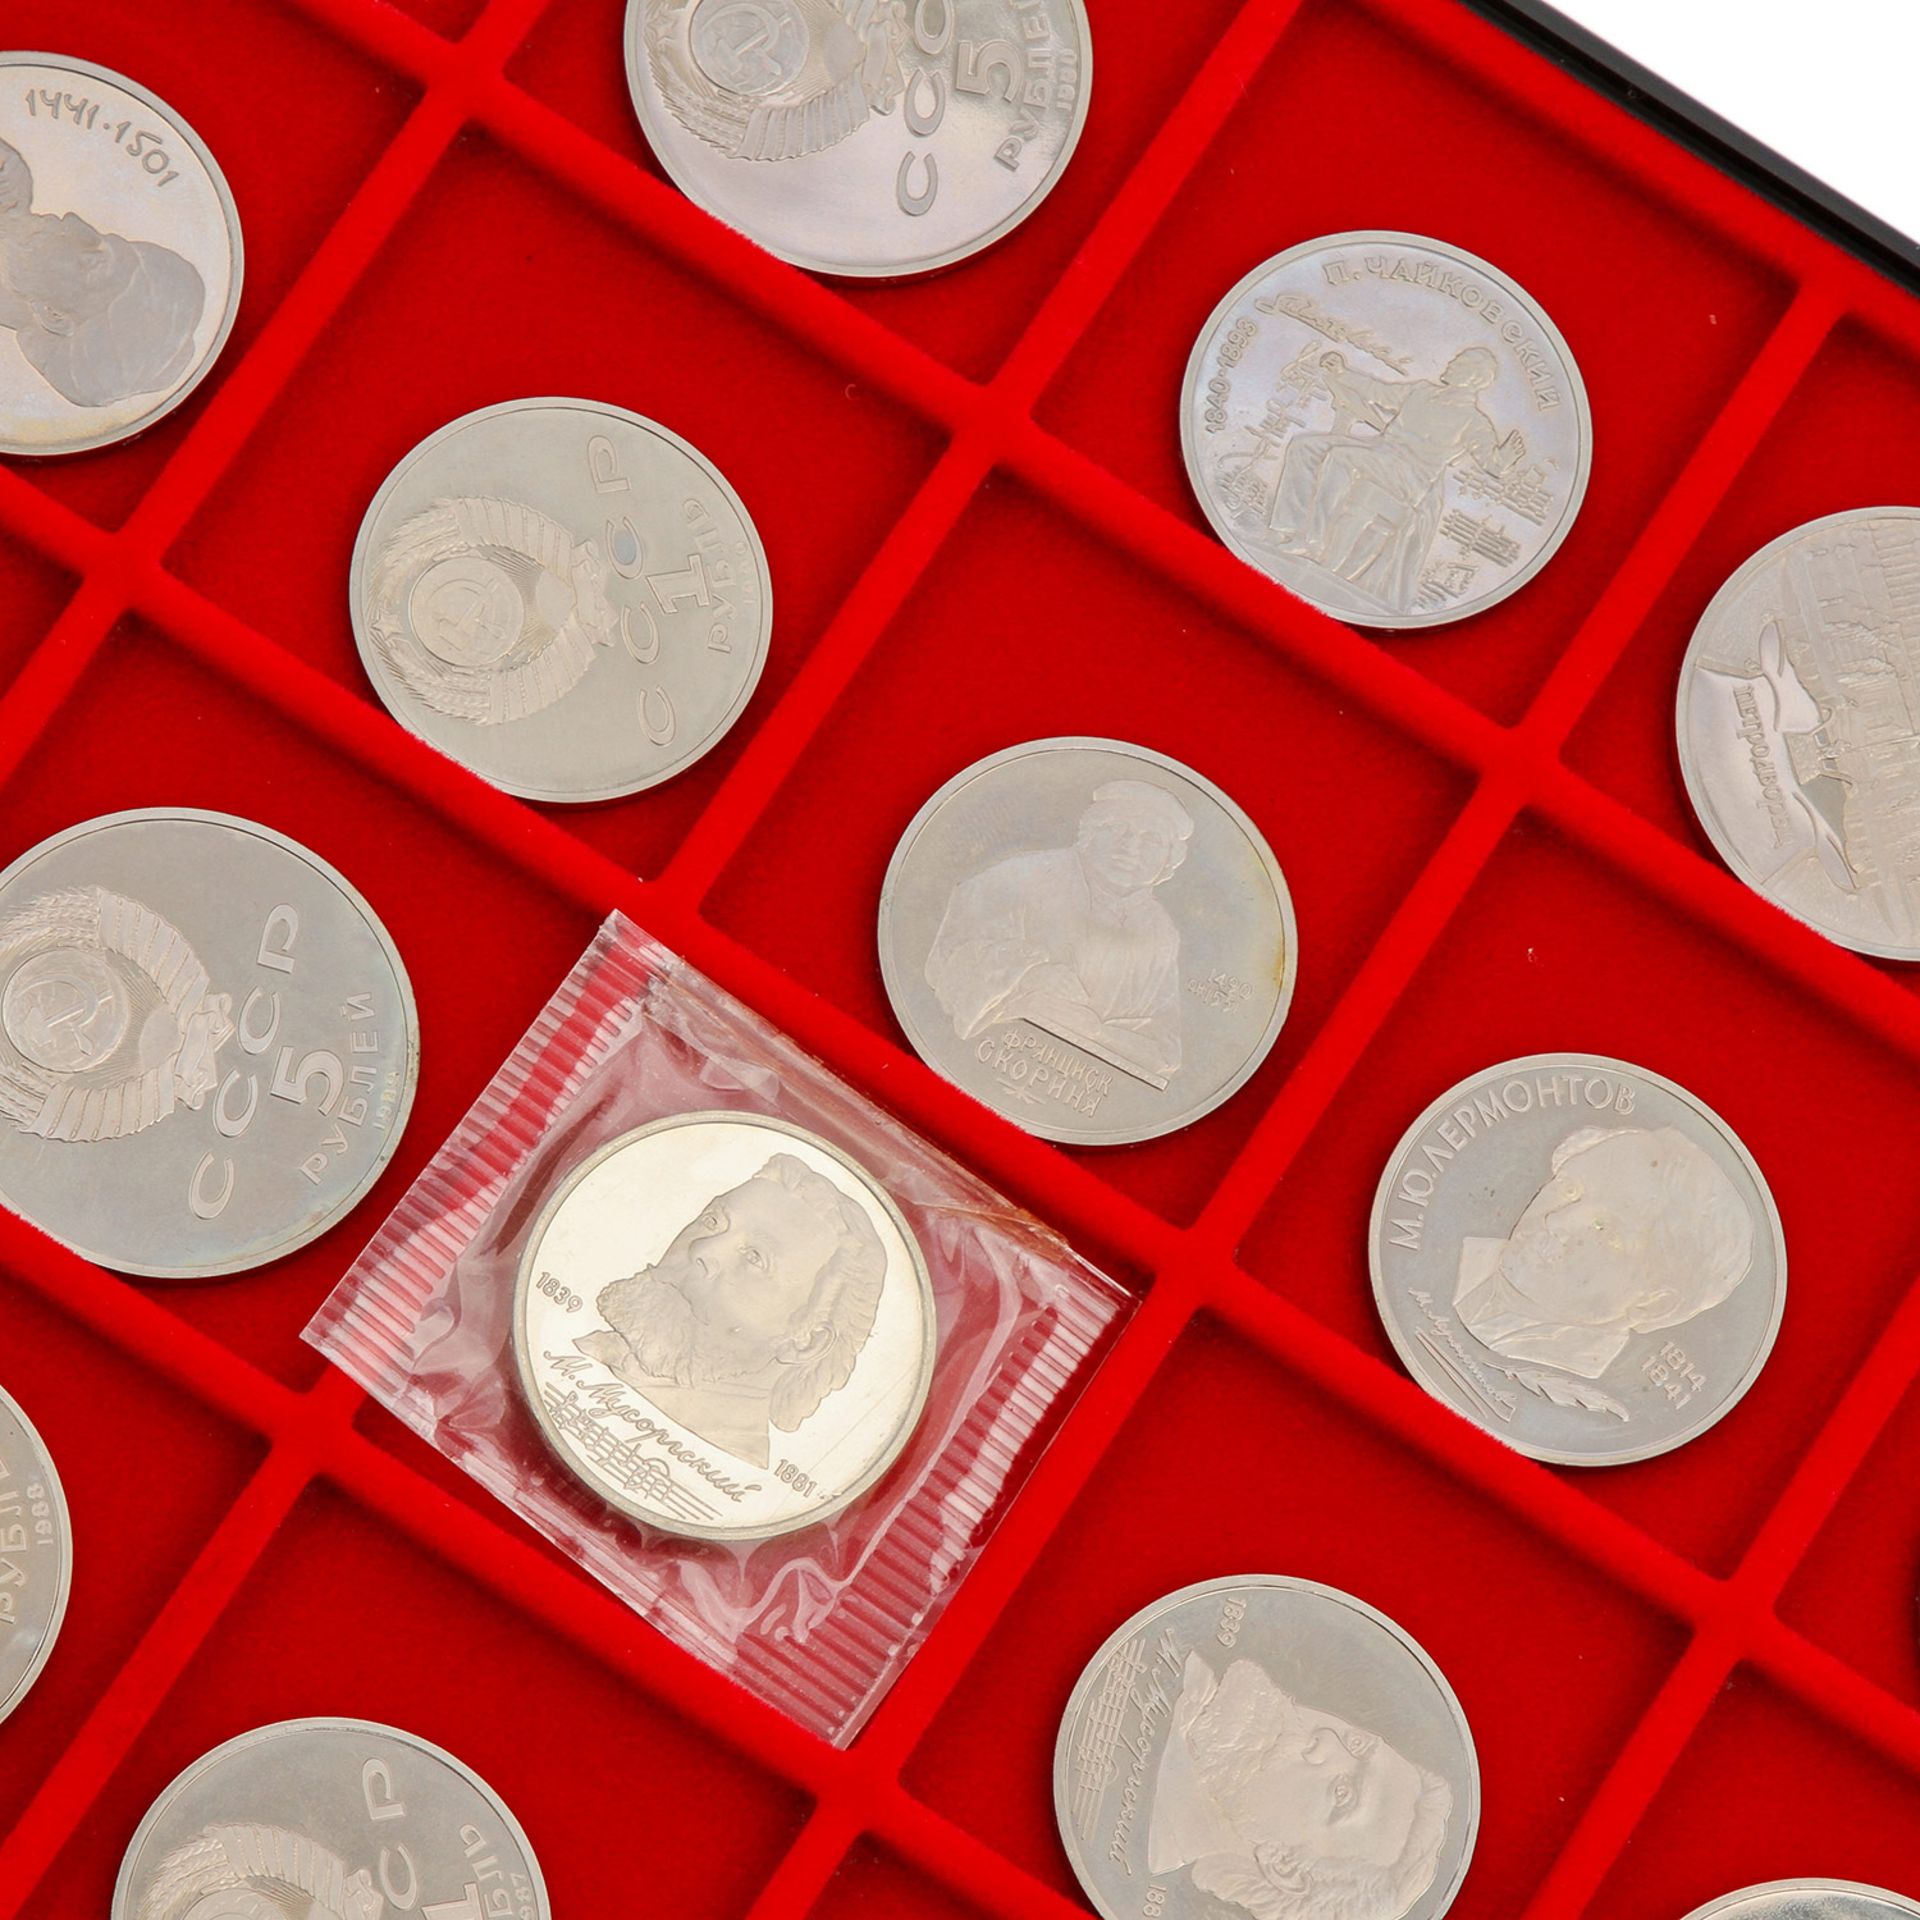 Russland - KABE Tableau mit 24 Münzen, darunter 5 und 1 Rubel CuNi,dazu 3 KMS 1988/89, lose 20 x 1 - Bild 2 aus 3